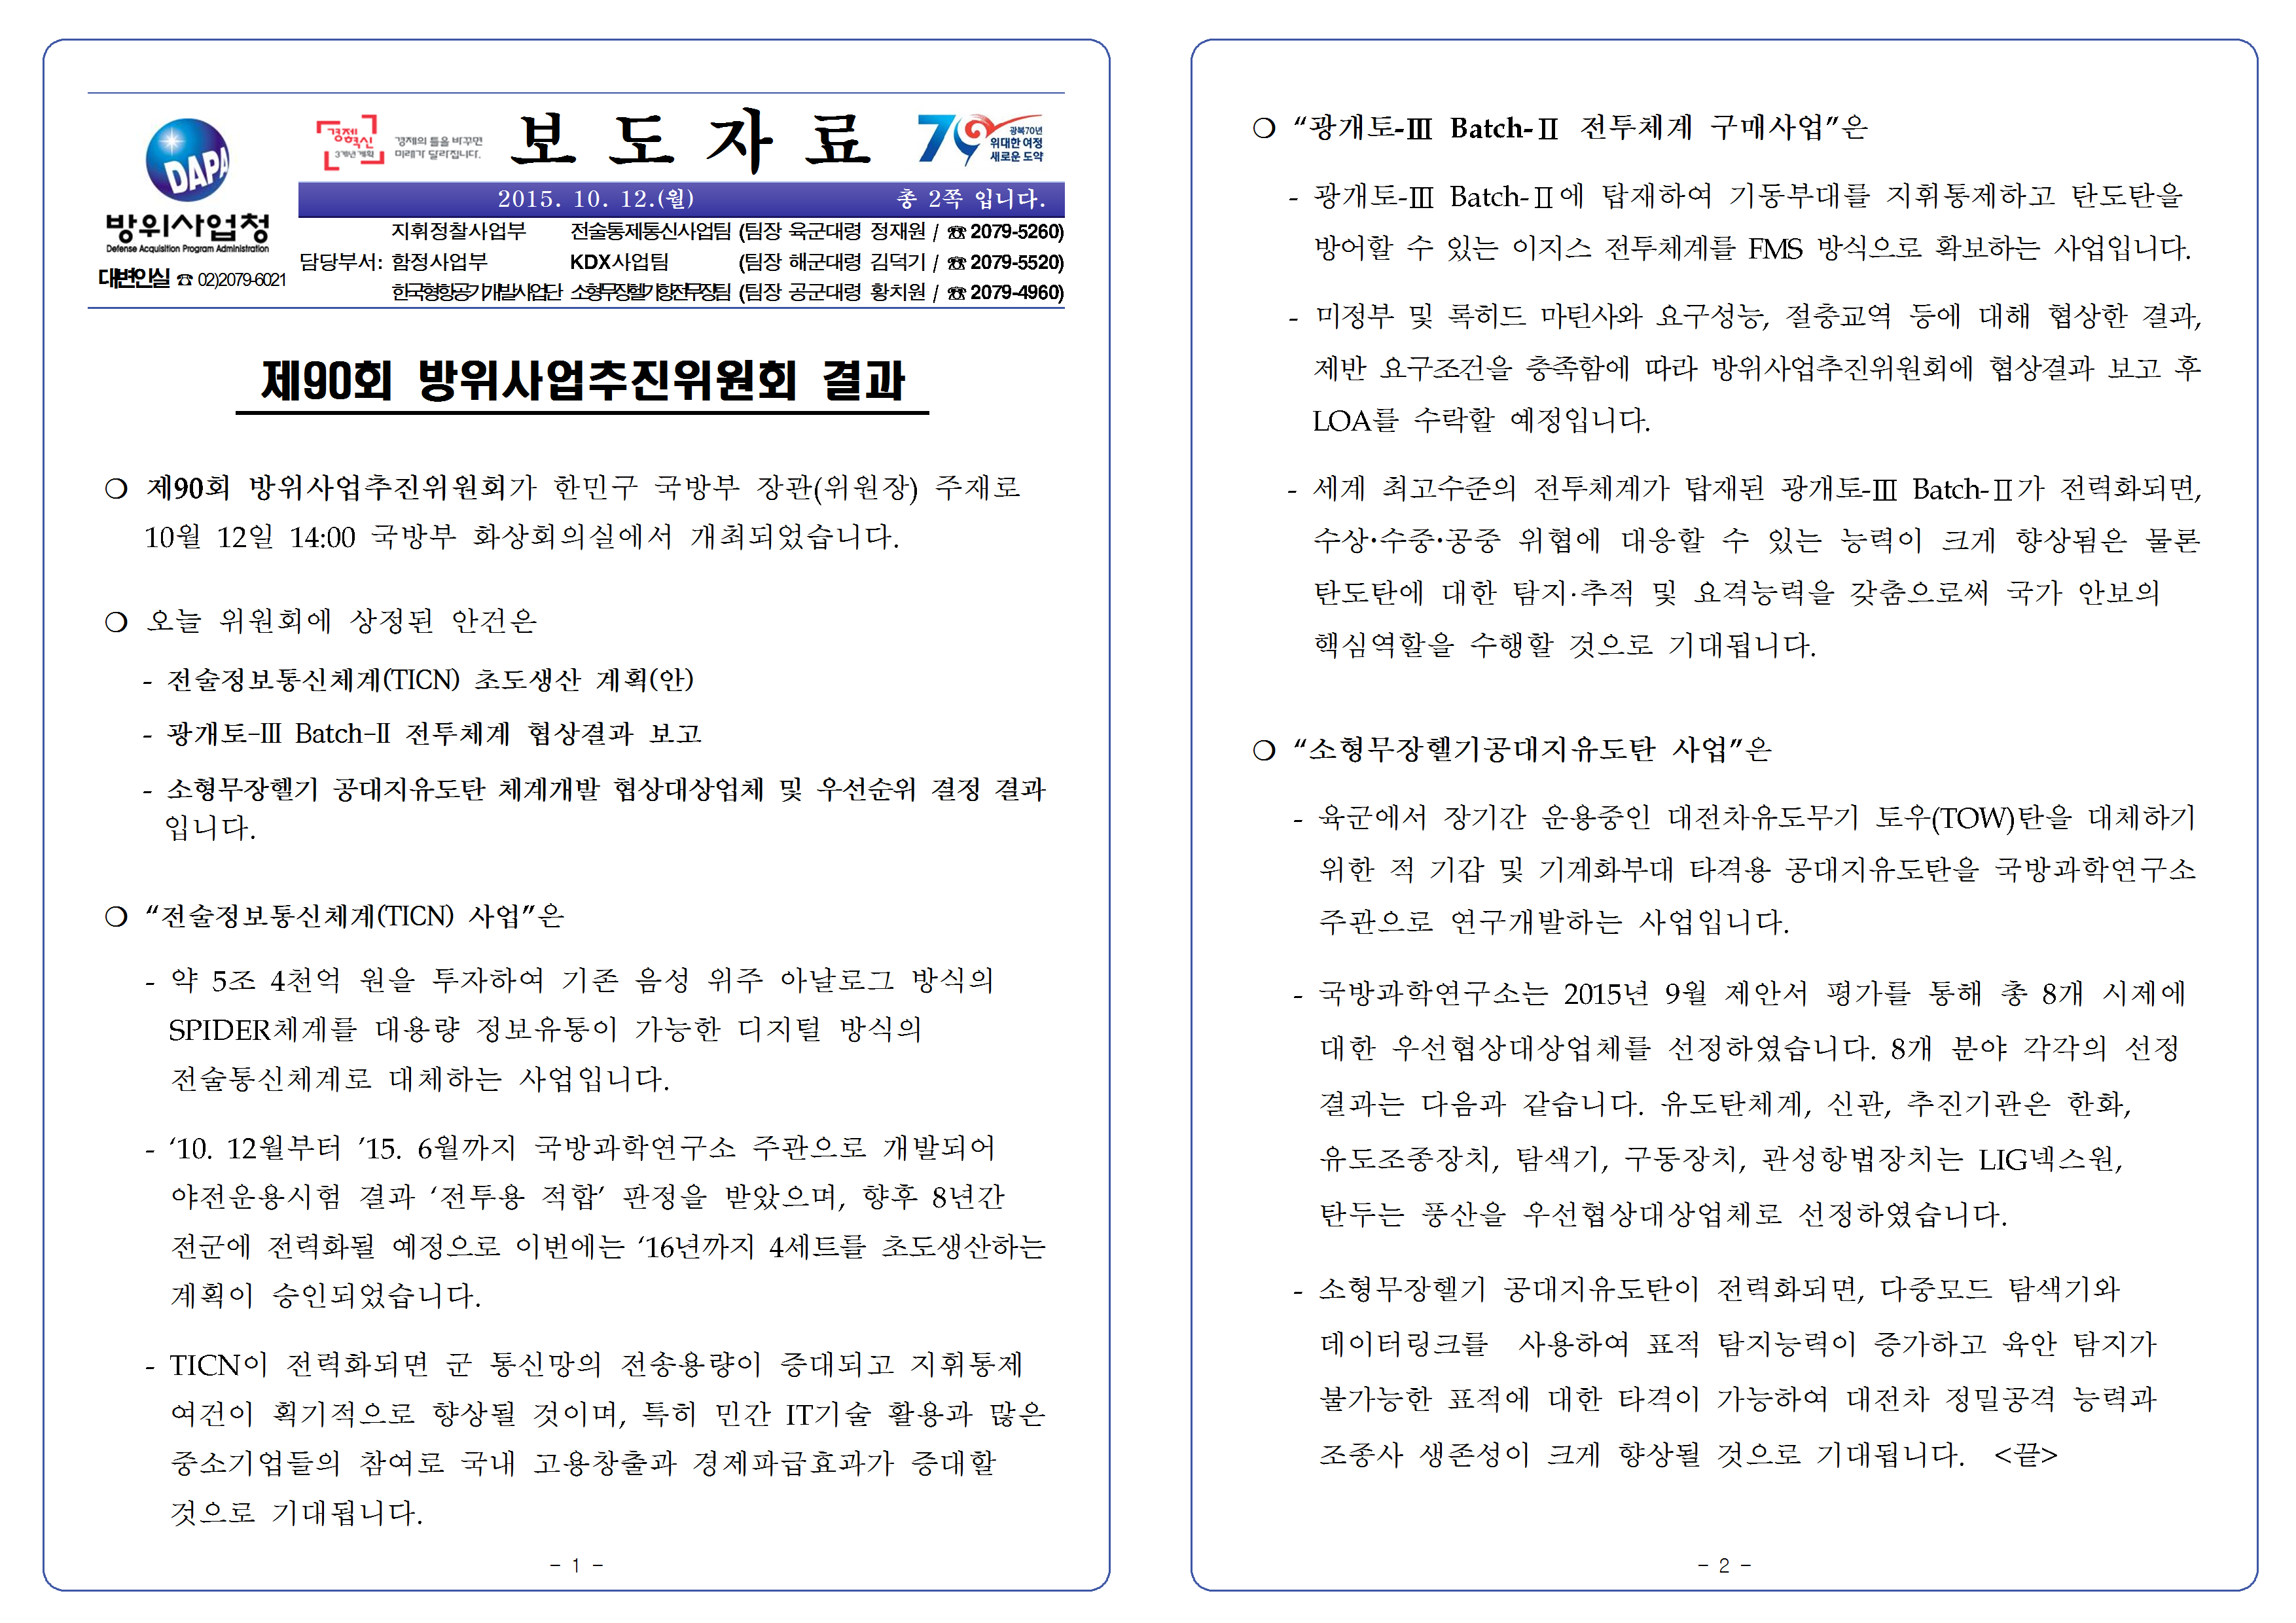 20151012-제90회 방위사업추진위원회 개최 결과001.png